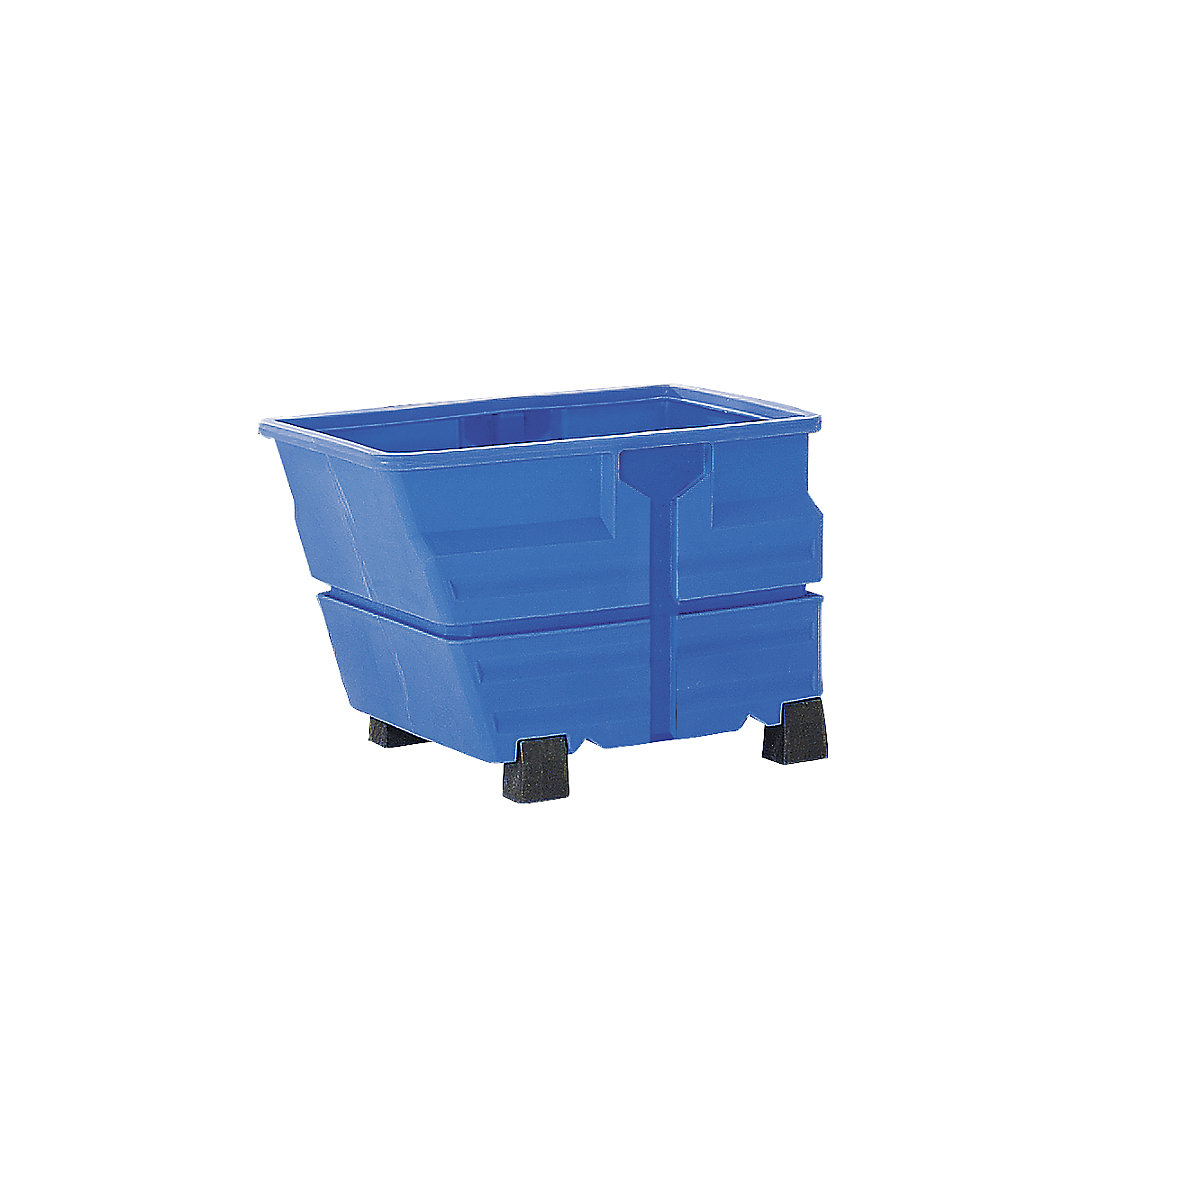 Kippbehälter, PE, ohne Traversenaufhängung, mit Standfüßen, Volumen 0,8 m³, blau-9